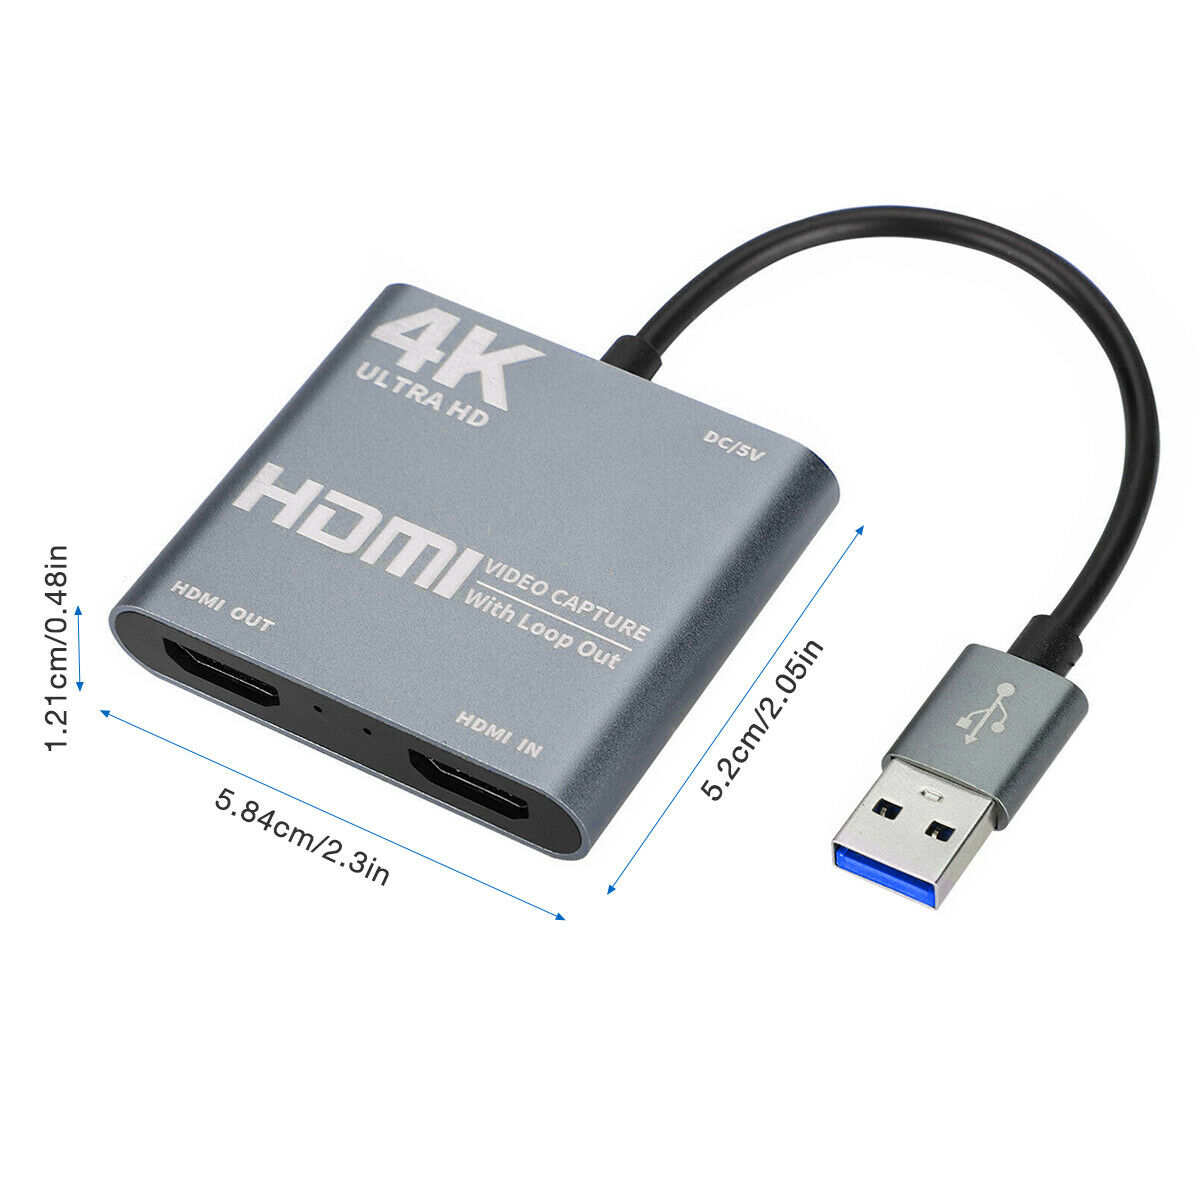 ROGTZ Capture Video Card Chuyển đổi HDMI sang USB 3.0 Để Live Stream Cho Điện Thoại/Máy Ảnh/PS4/ XBOX/Máy Tính - Hàng Nhập Khẩu